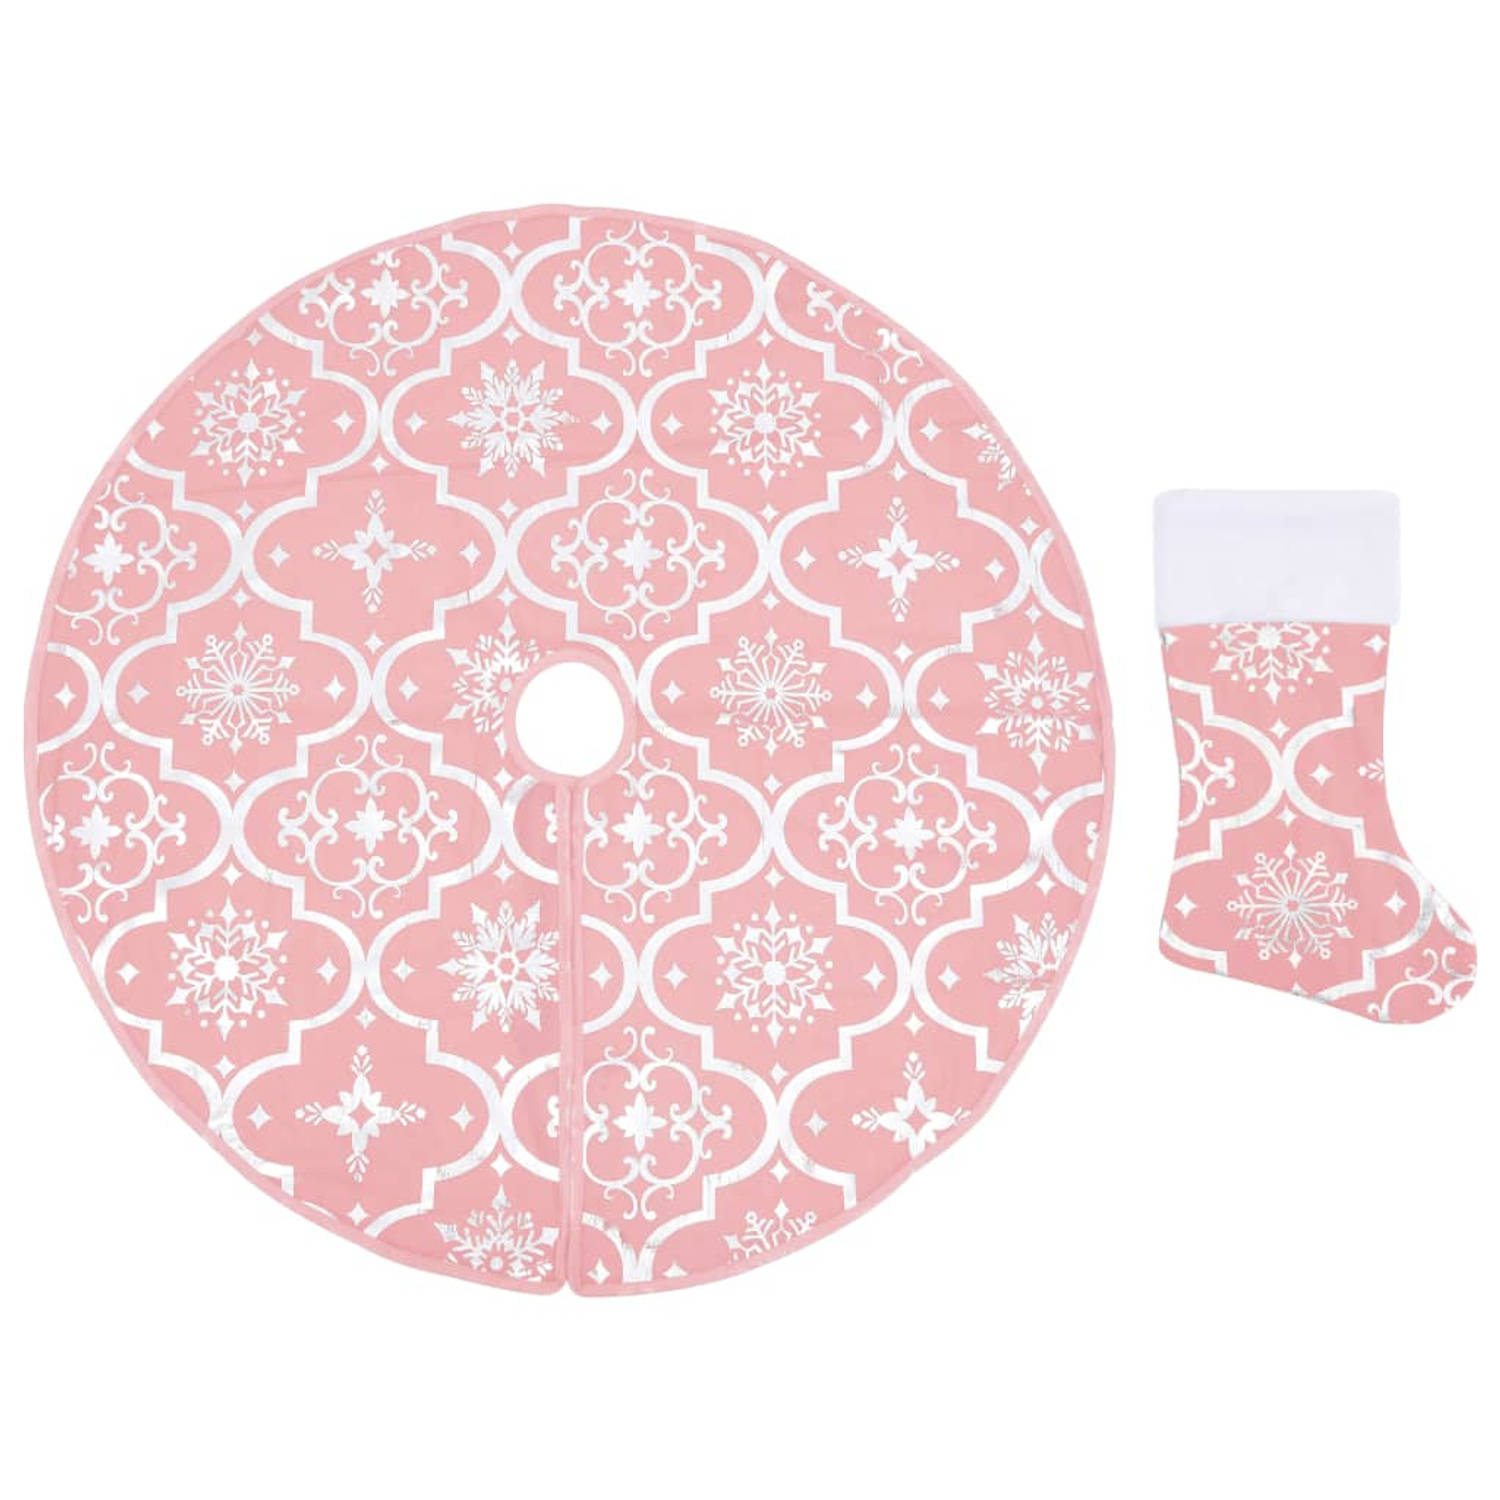 The Living Store Kerstboomrok - roze - stof - 122 cm - inklapbaar - sneeuwpatroon - met kerstsok